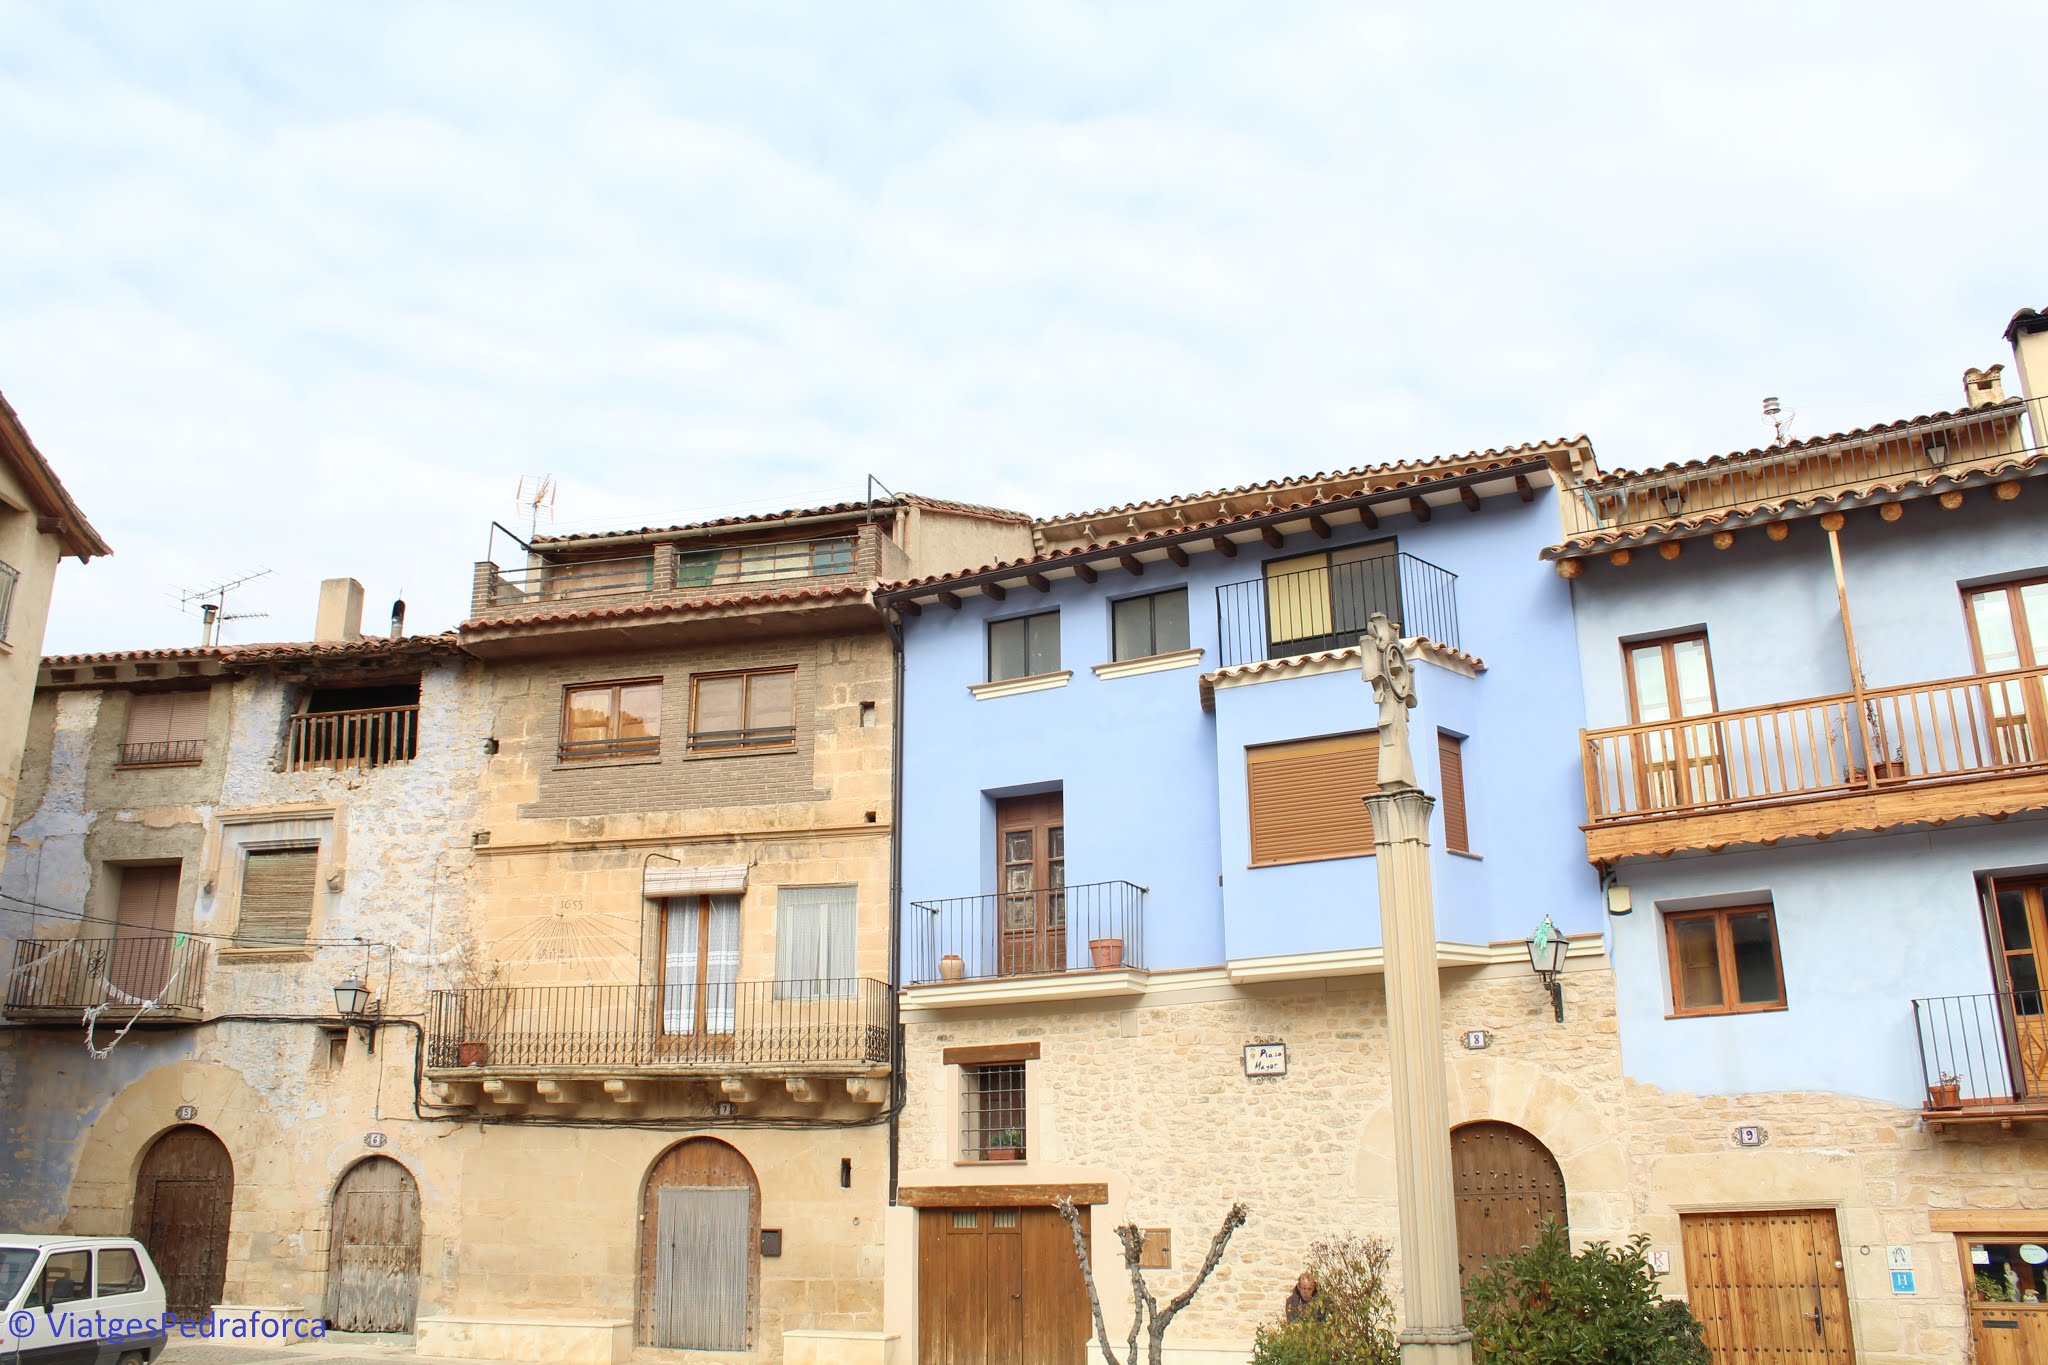 Terol, Aragó, els pobles més bonics del Matarranya, conjunt històric artístic, patrimoni cultural